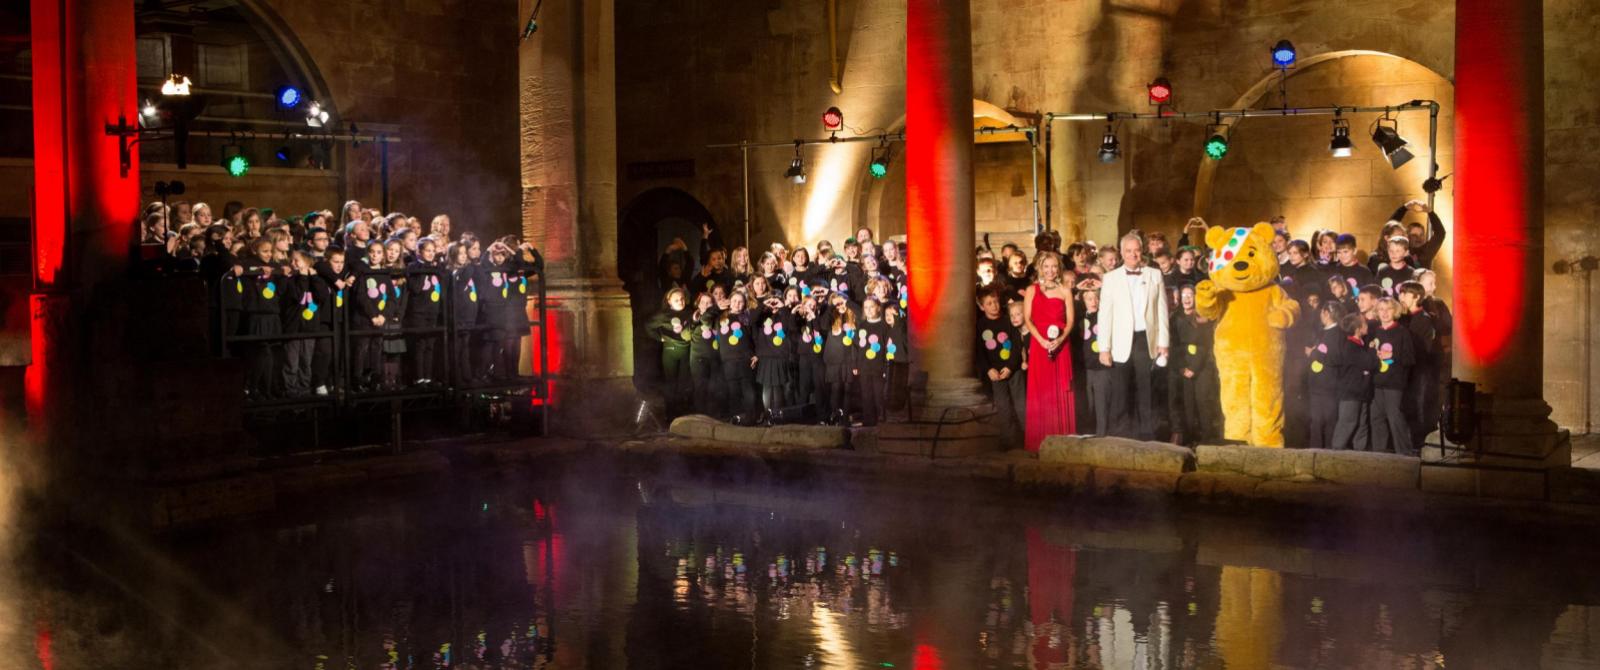 2013年11月BBC《儿童救助活动》栏目来到罗马浴场博物馆